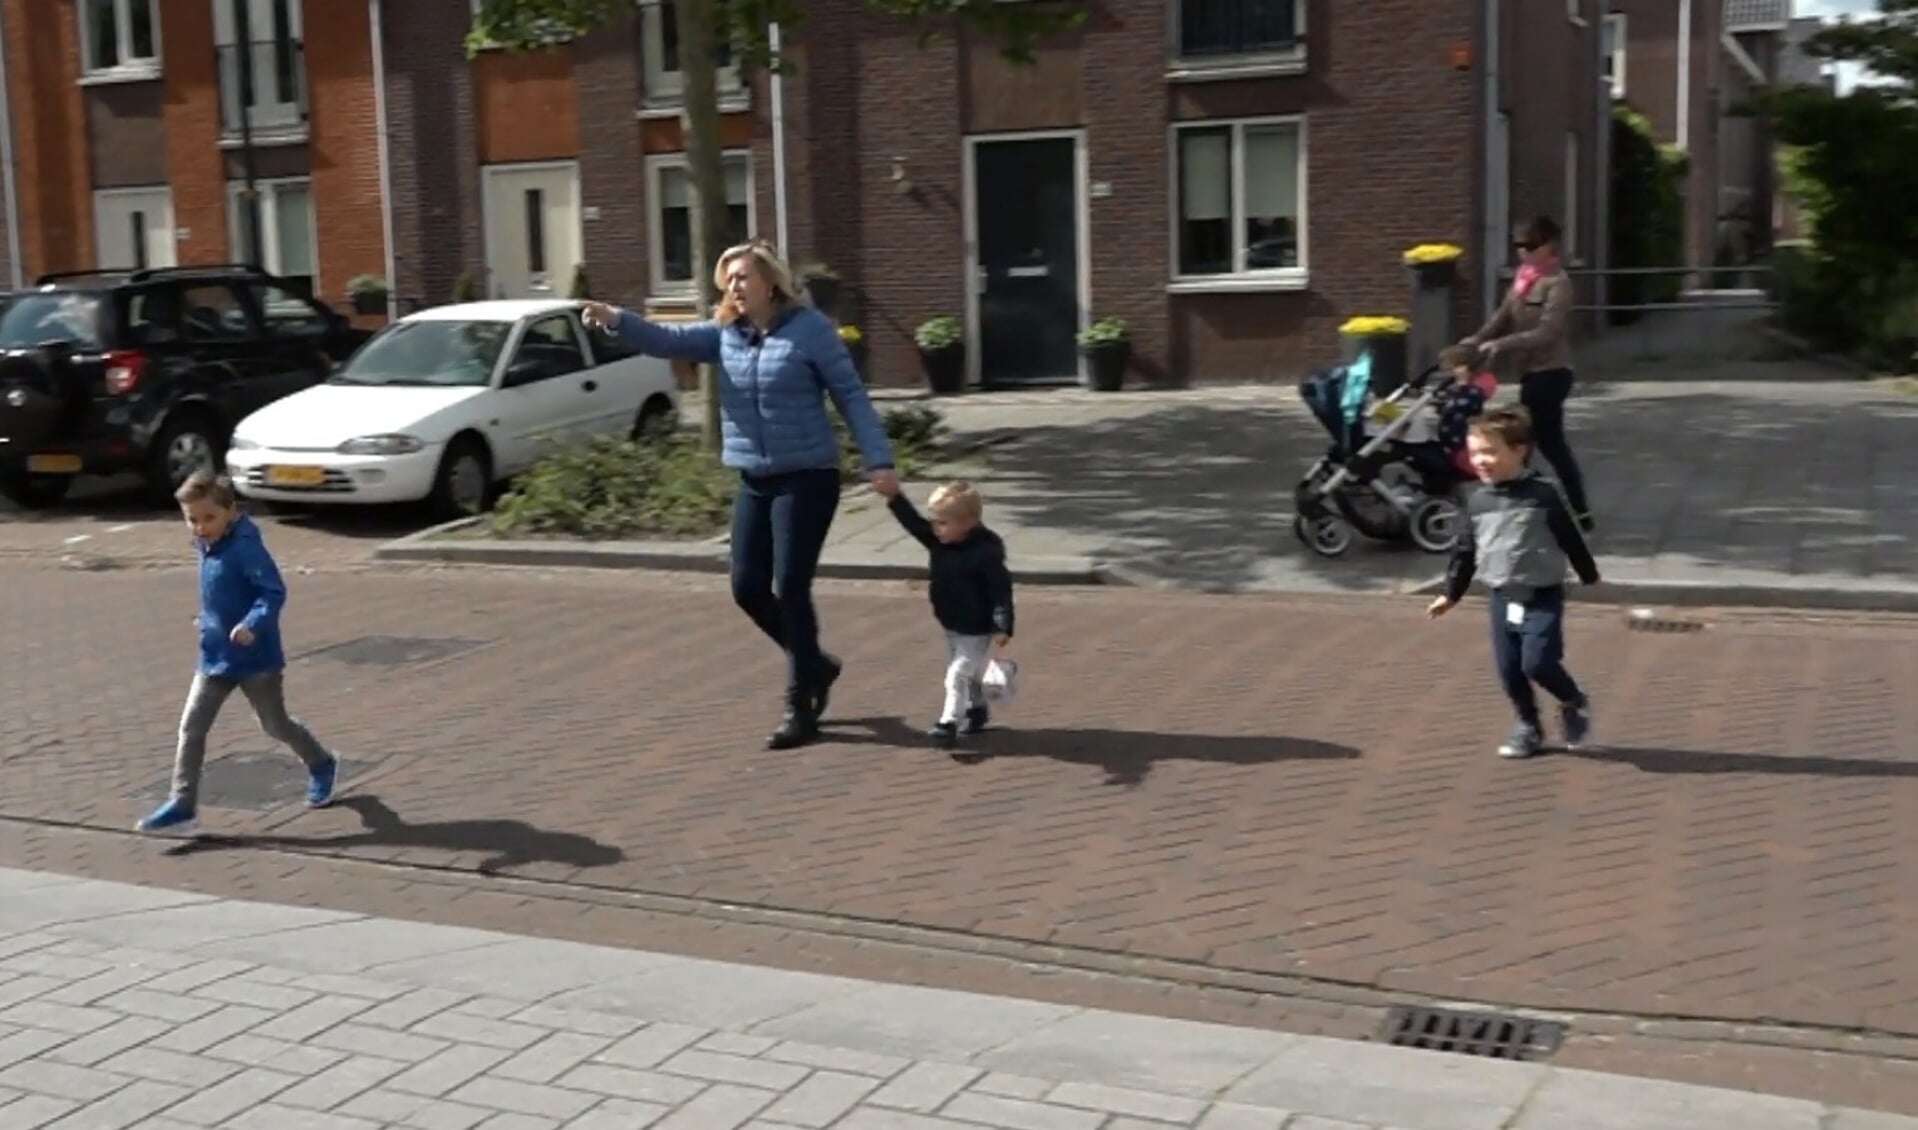 Doriande Goedhart probeert de Meeuwenstraat veilig over te steken met haar kinderen. 